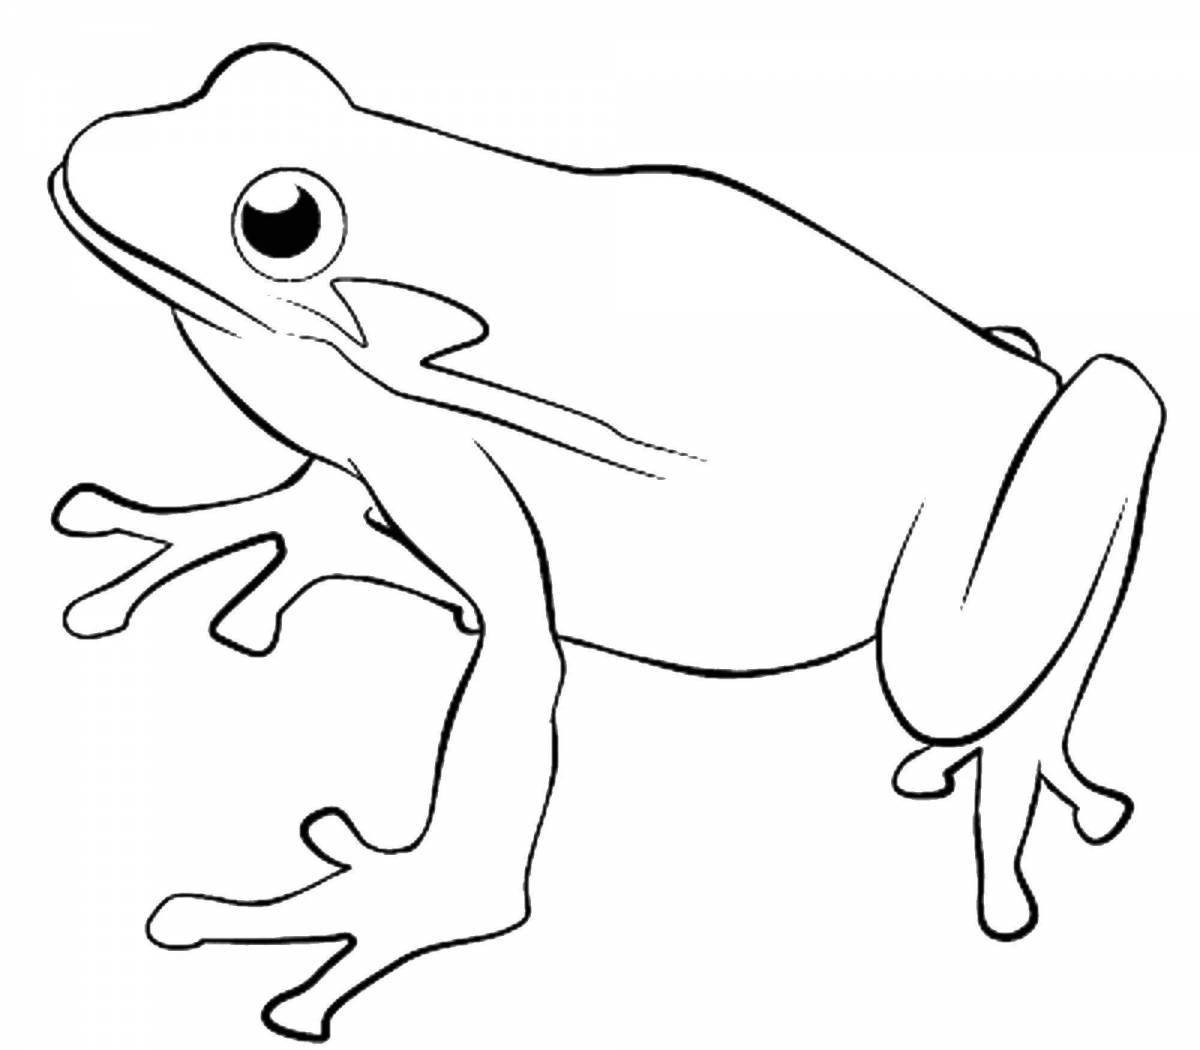 Coloring pages amphibians